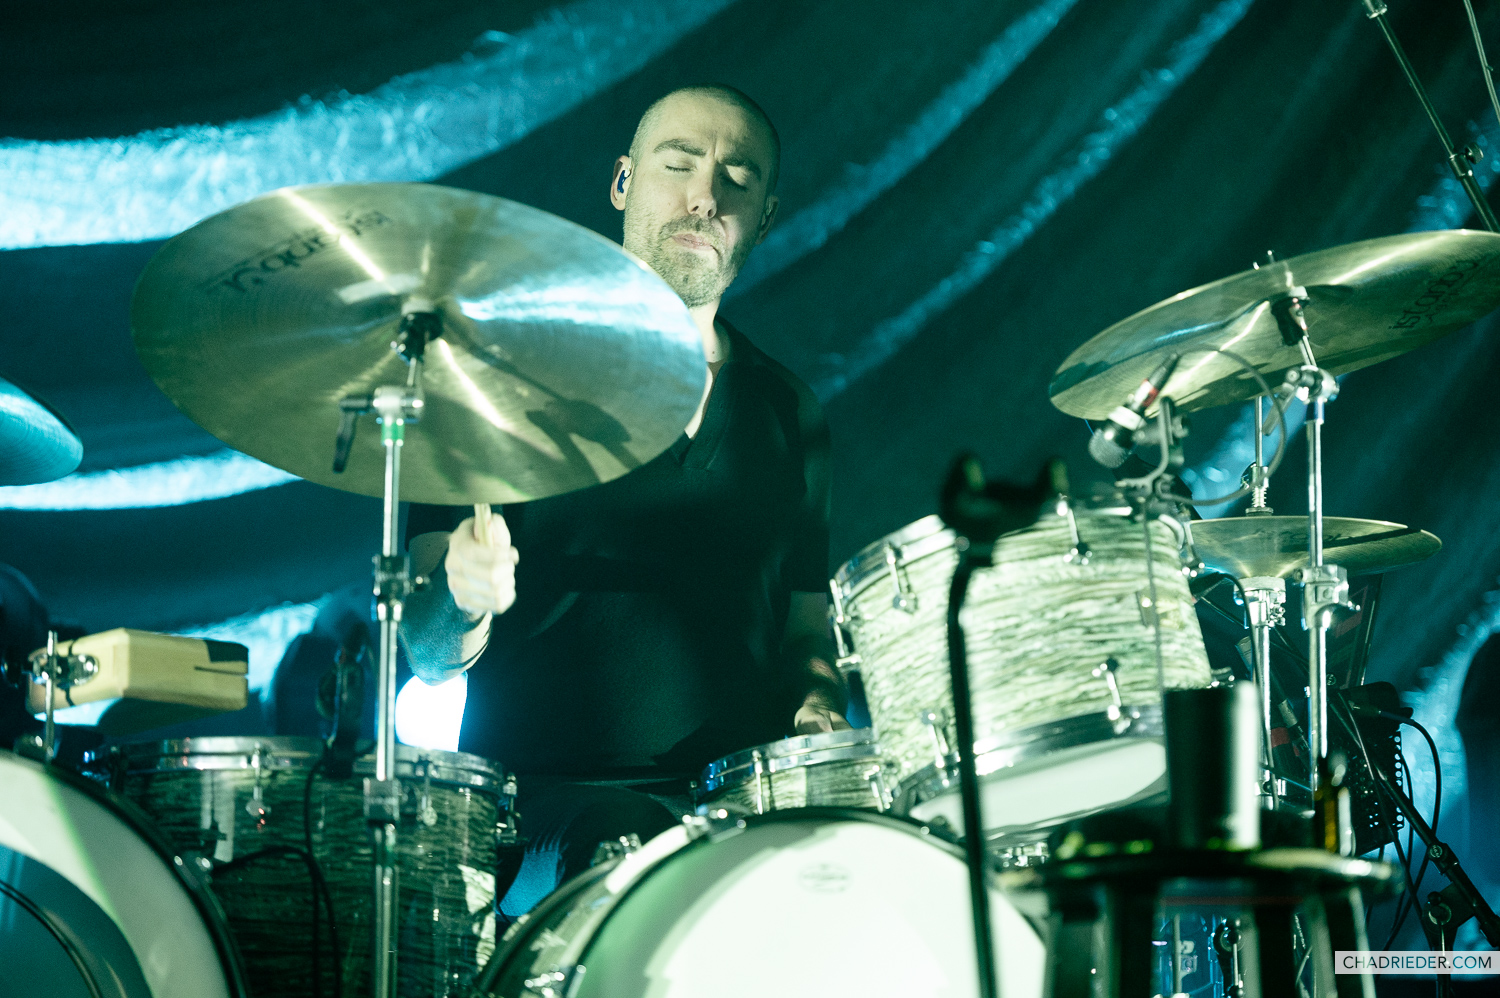 Dan Bailey drummer